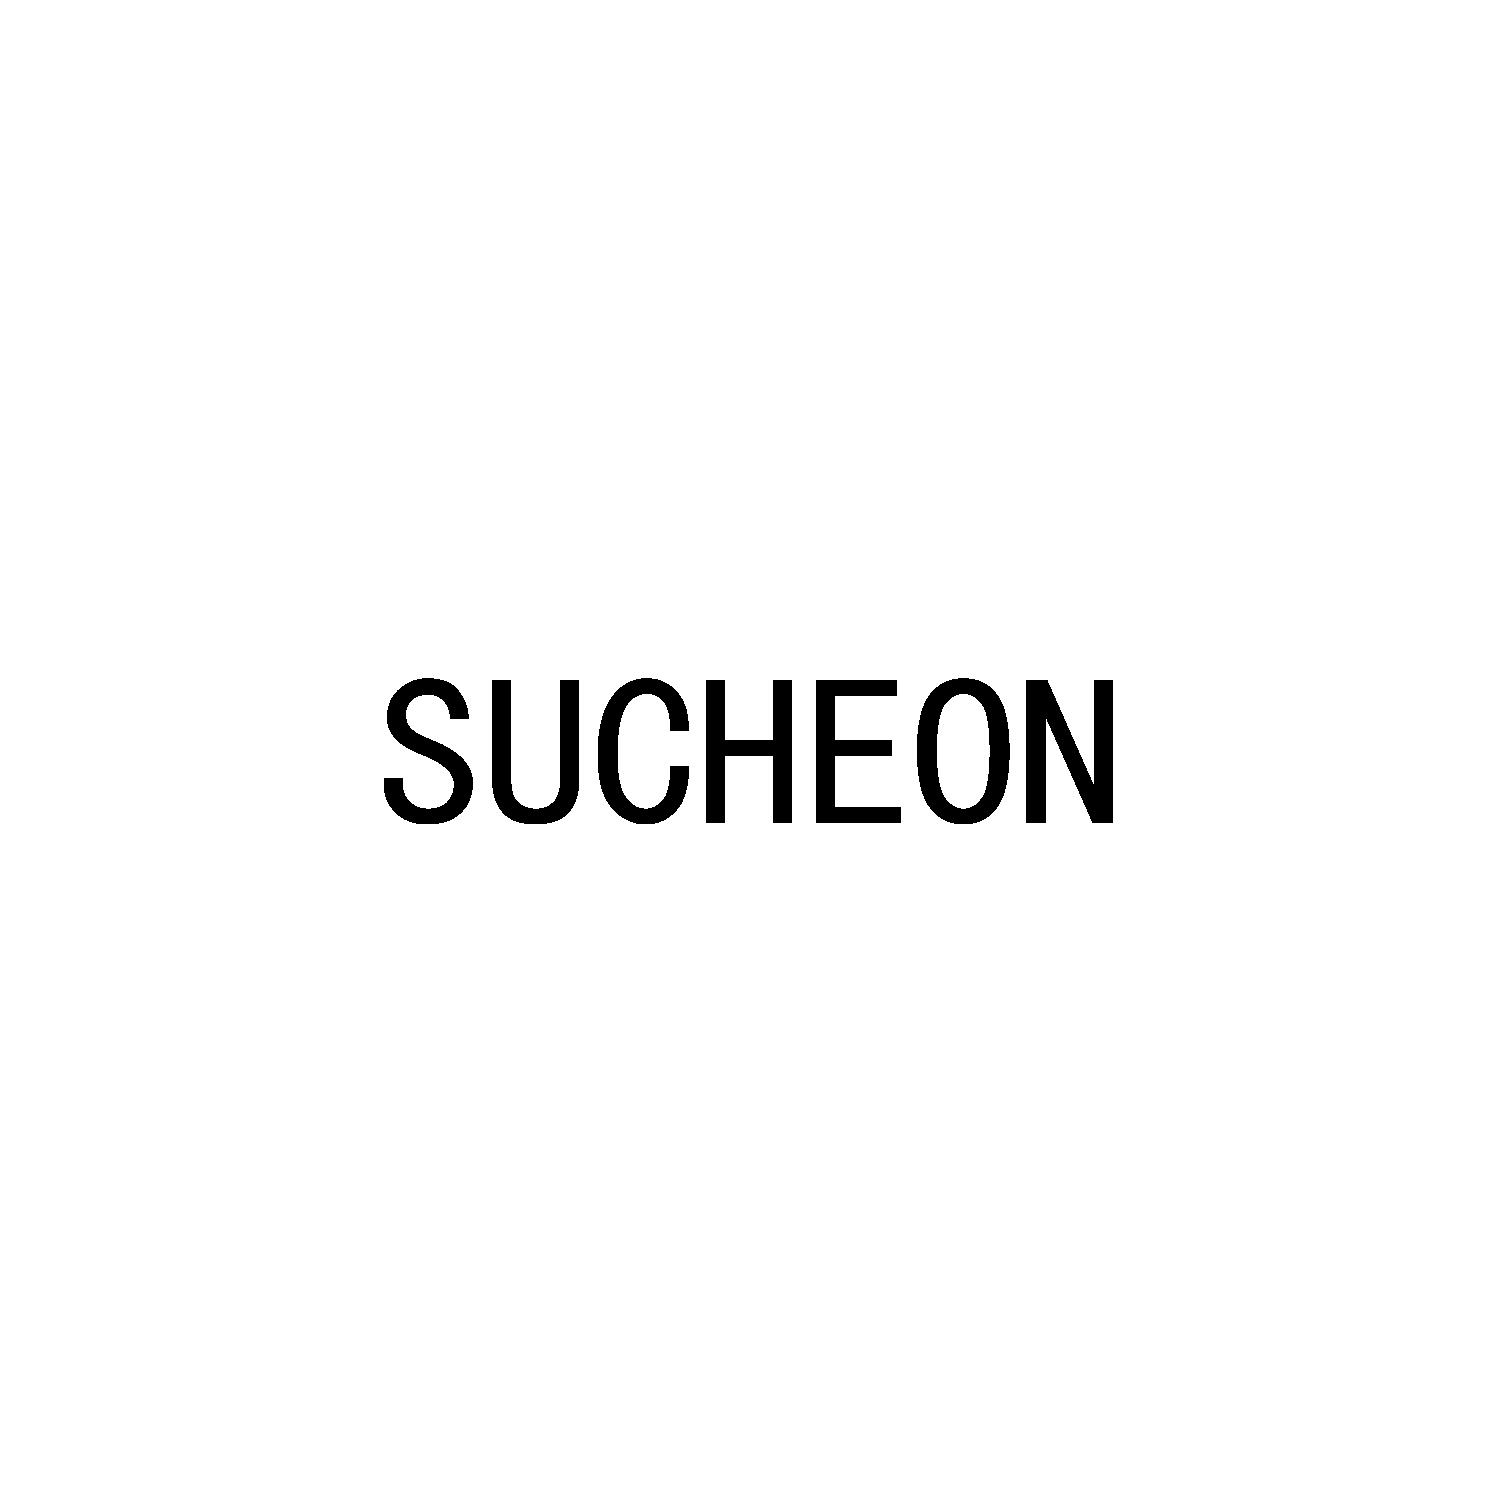 SUCHEON